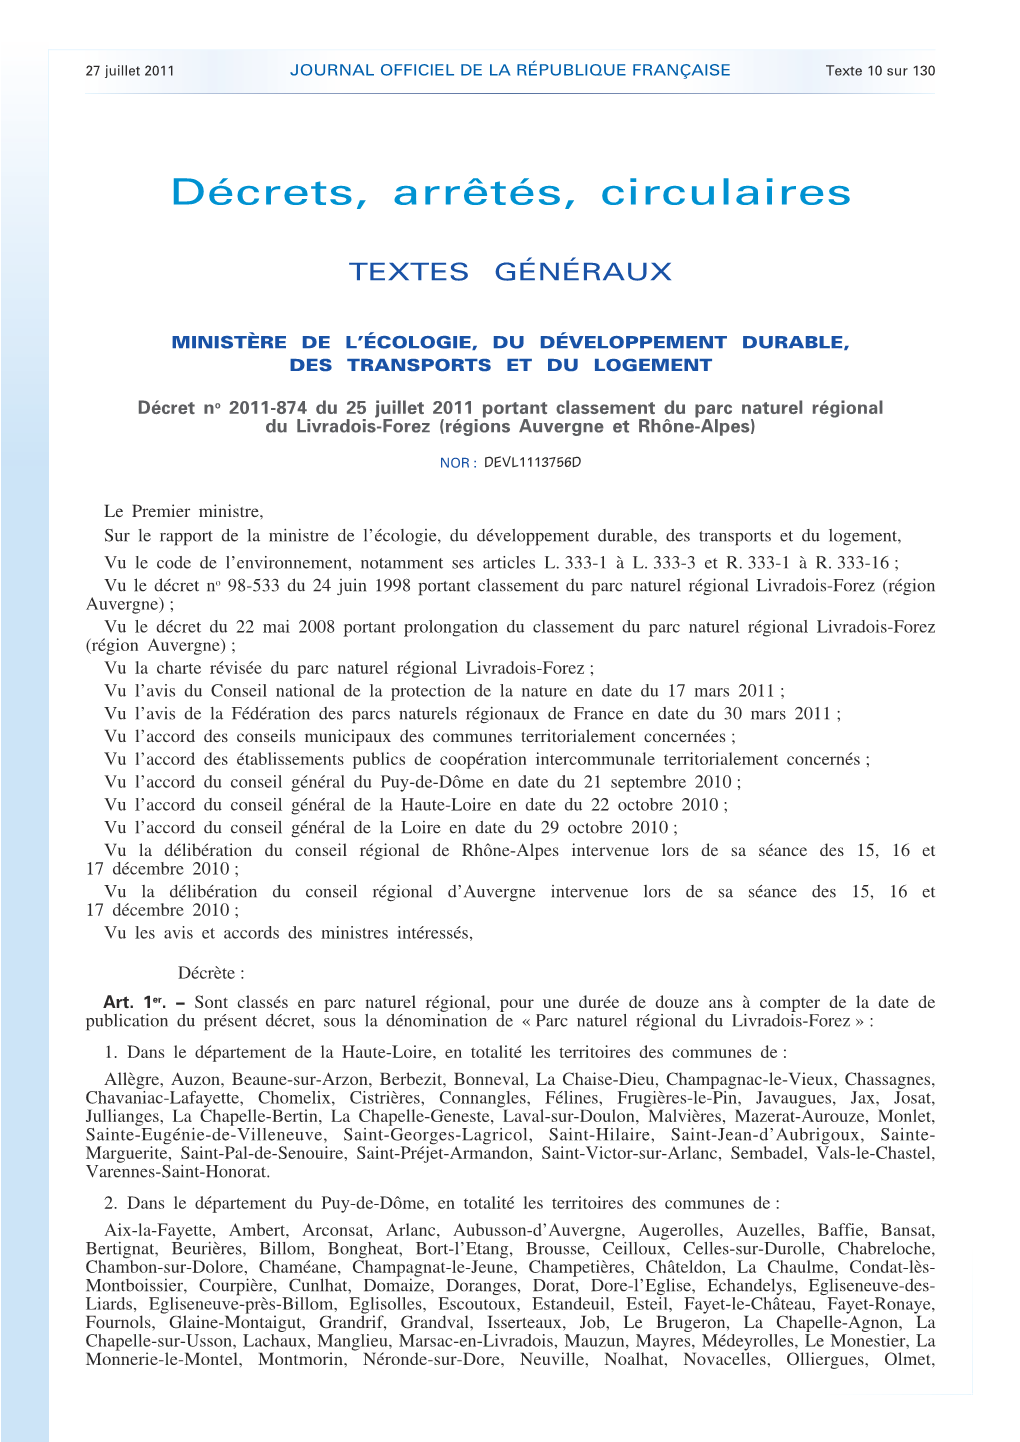 JOURNAL OFFICIEL DE LA RÉPUBLIQUE FRANÇAISE Texte 10 Sur 130